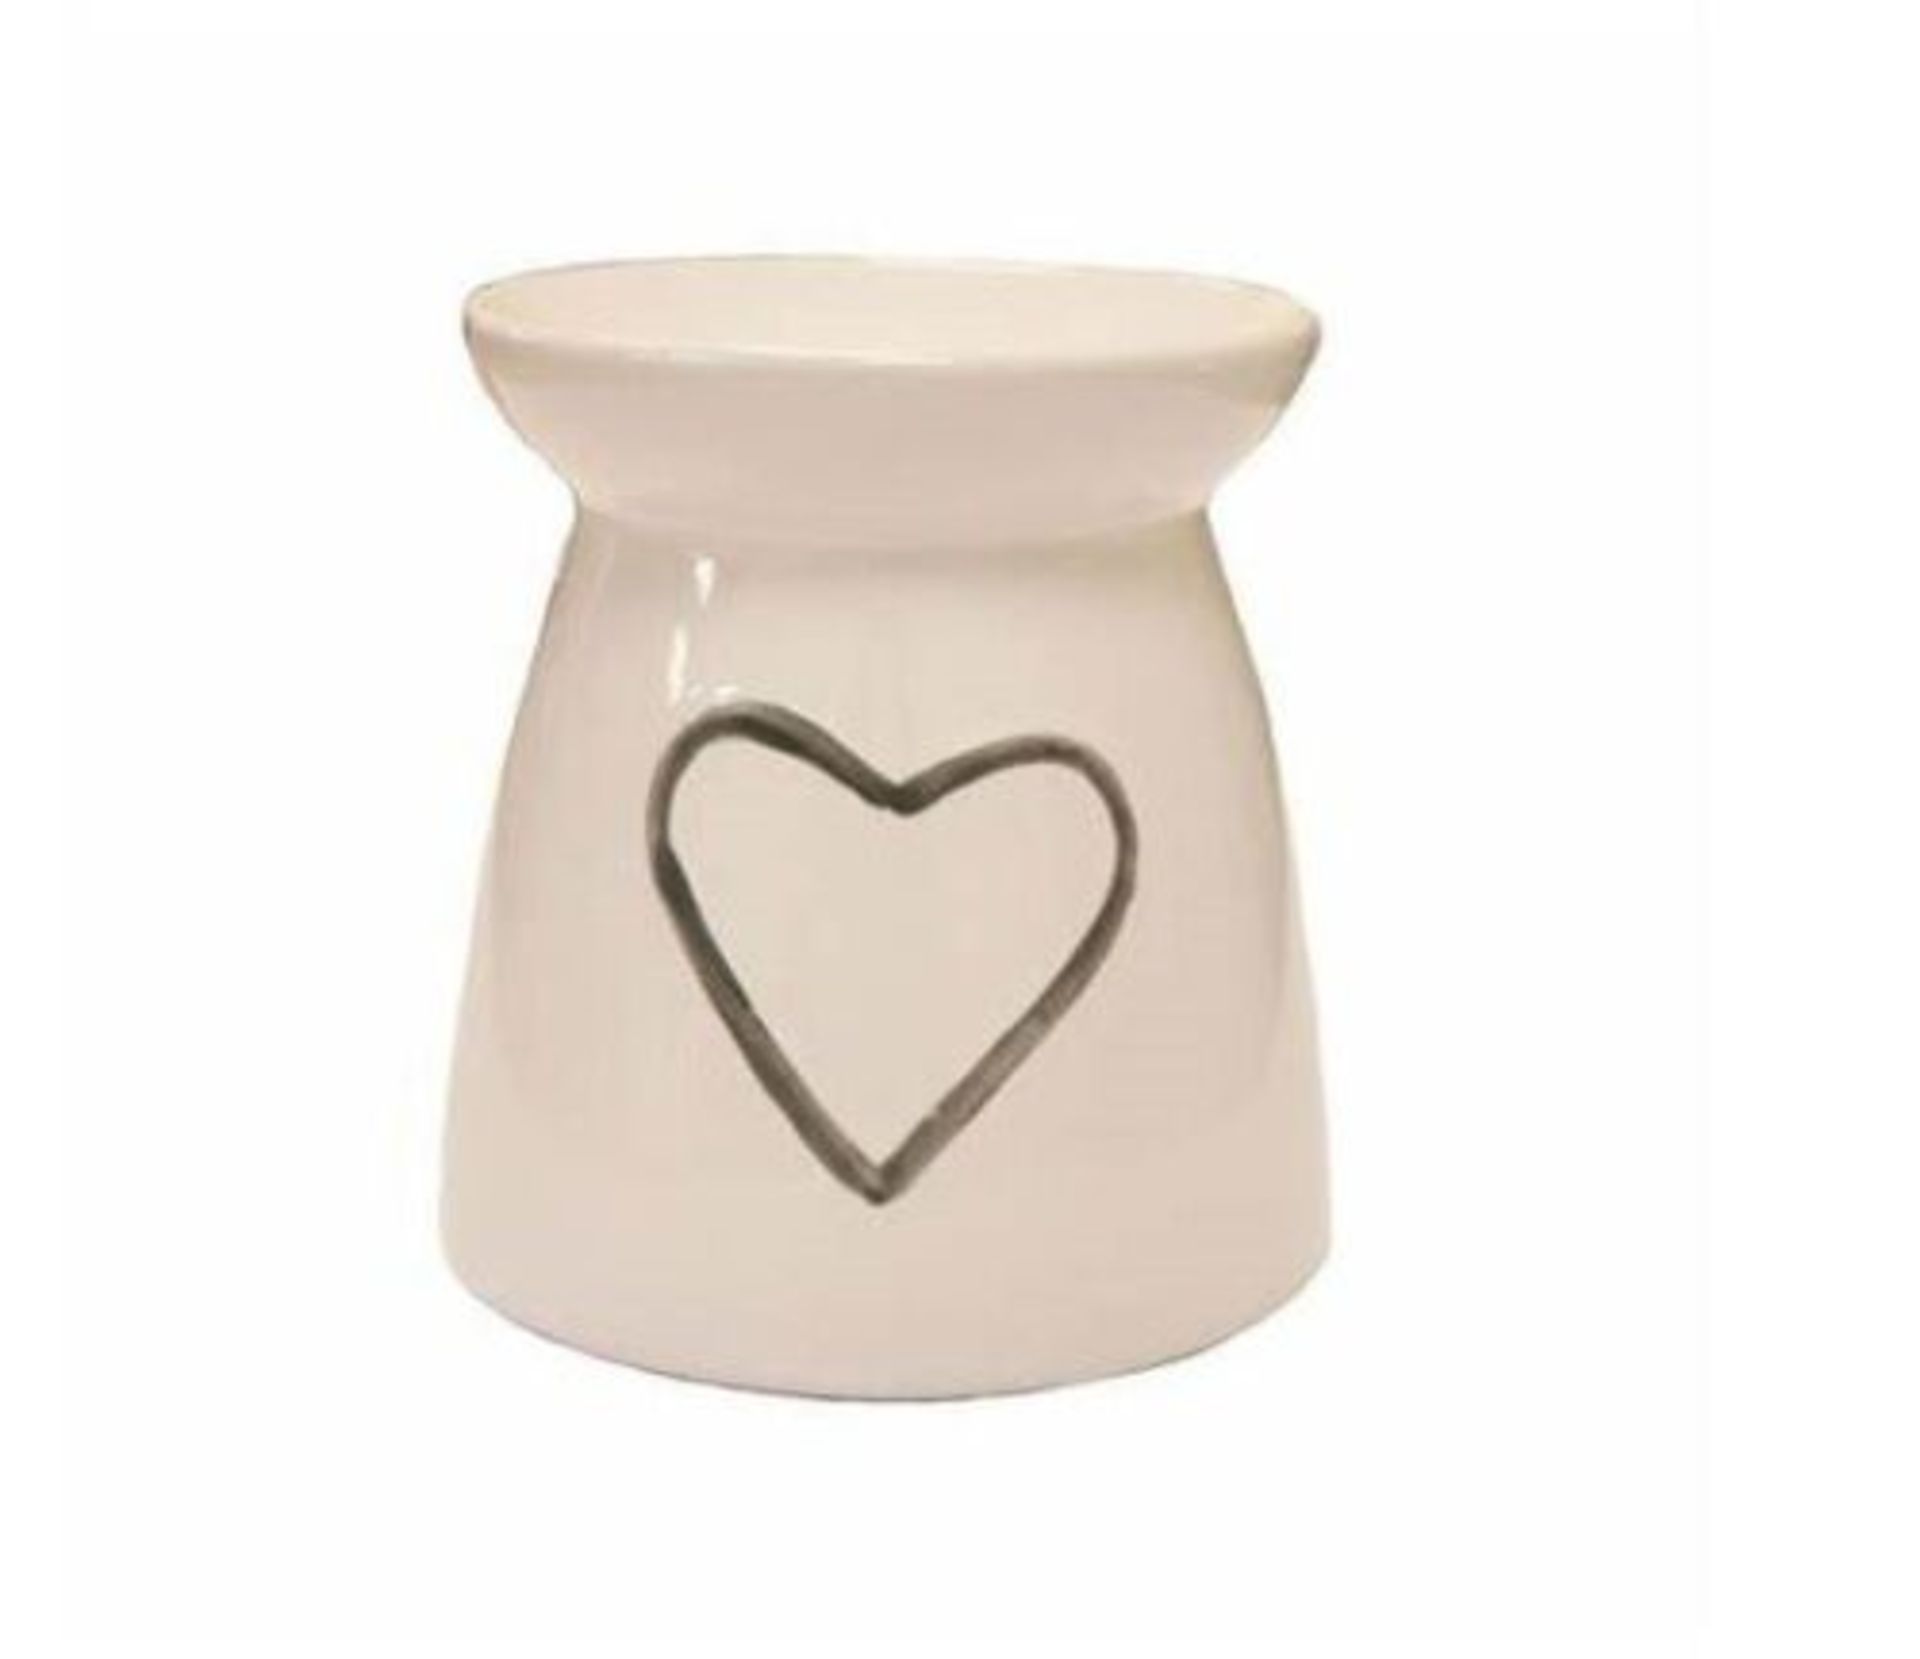 White Ceramic Heart Tea Light Oil Burner Grey With Heart